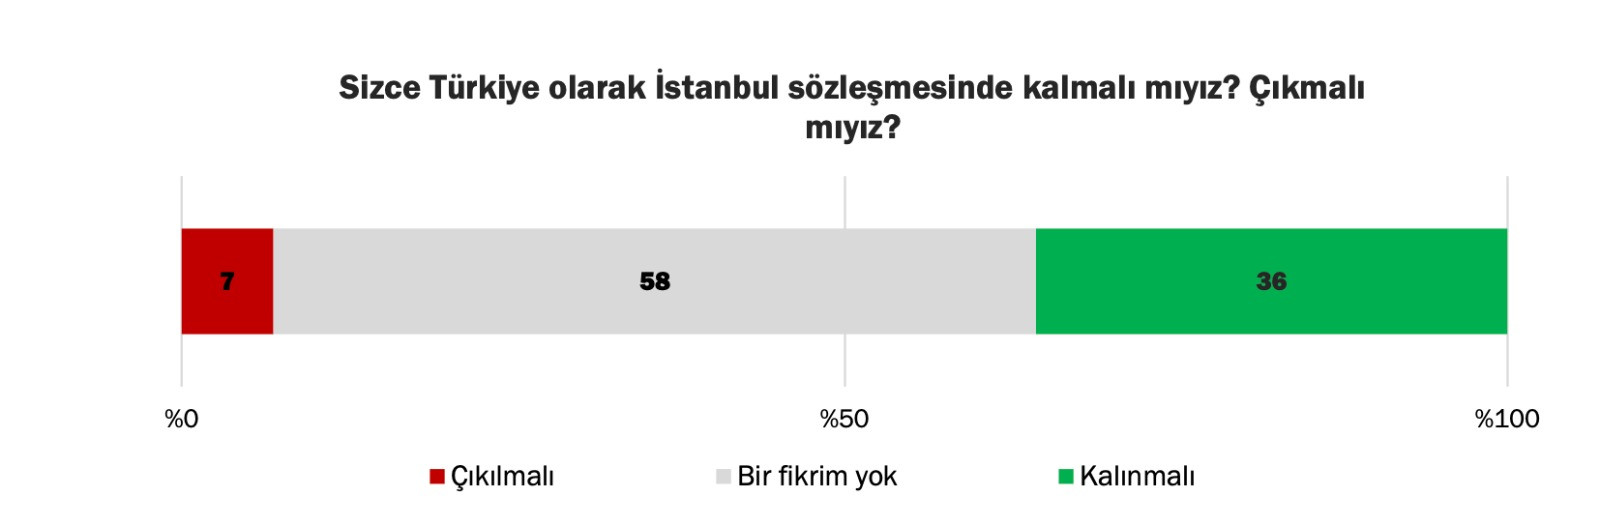 İstanbul Sözleşmesine karşı çıkanlar sadece yüzde 7 - Resim: 1